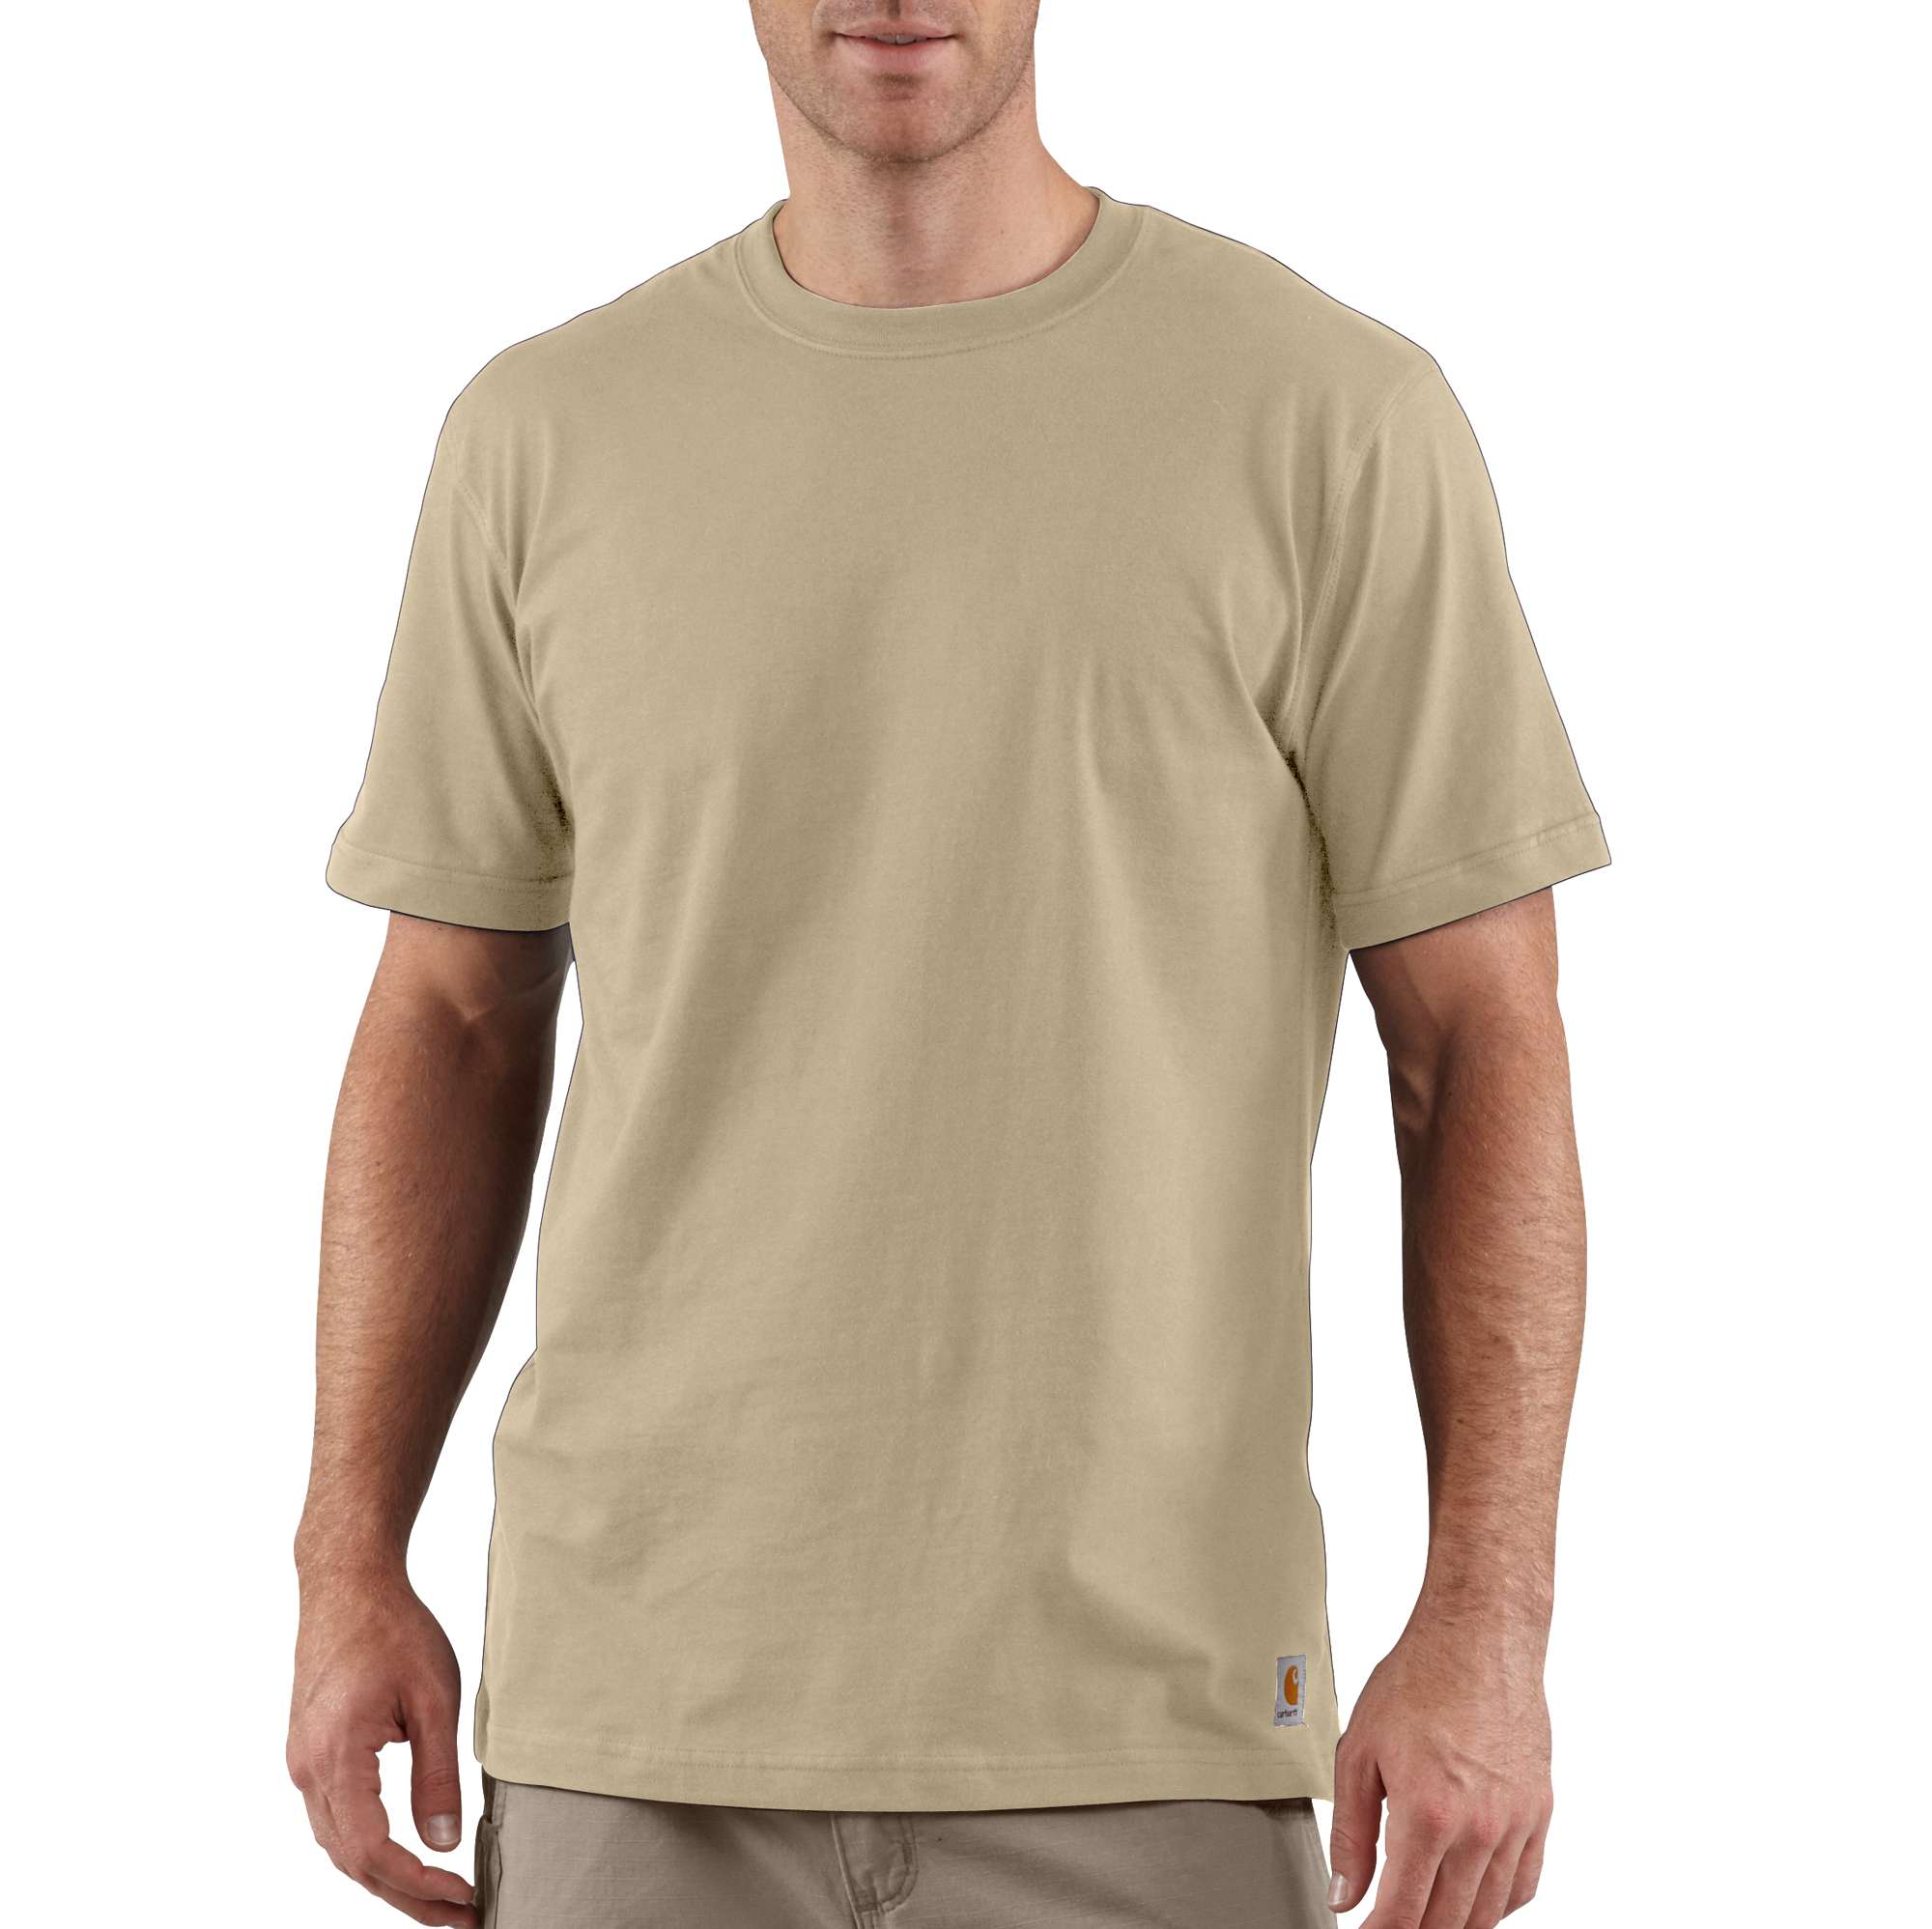 Men's Lightweight Non-Pocket T-Shirt